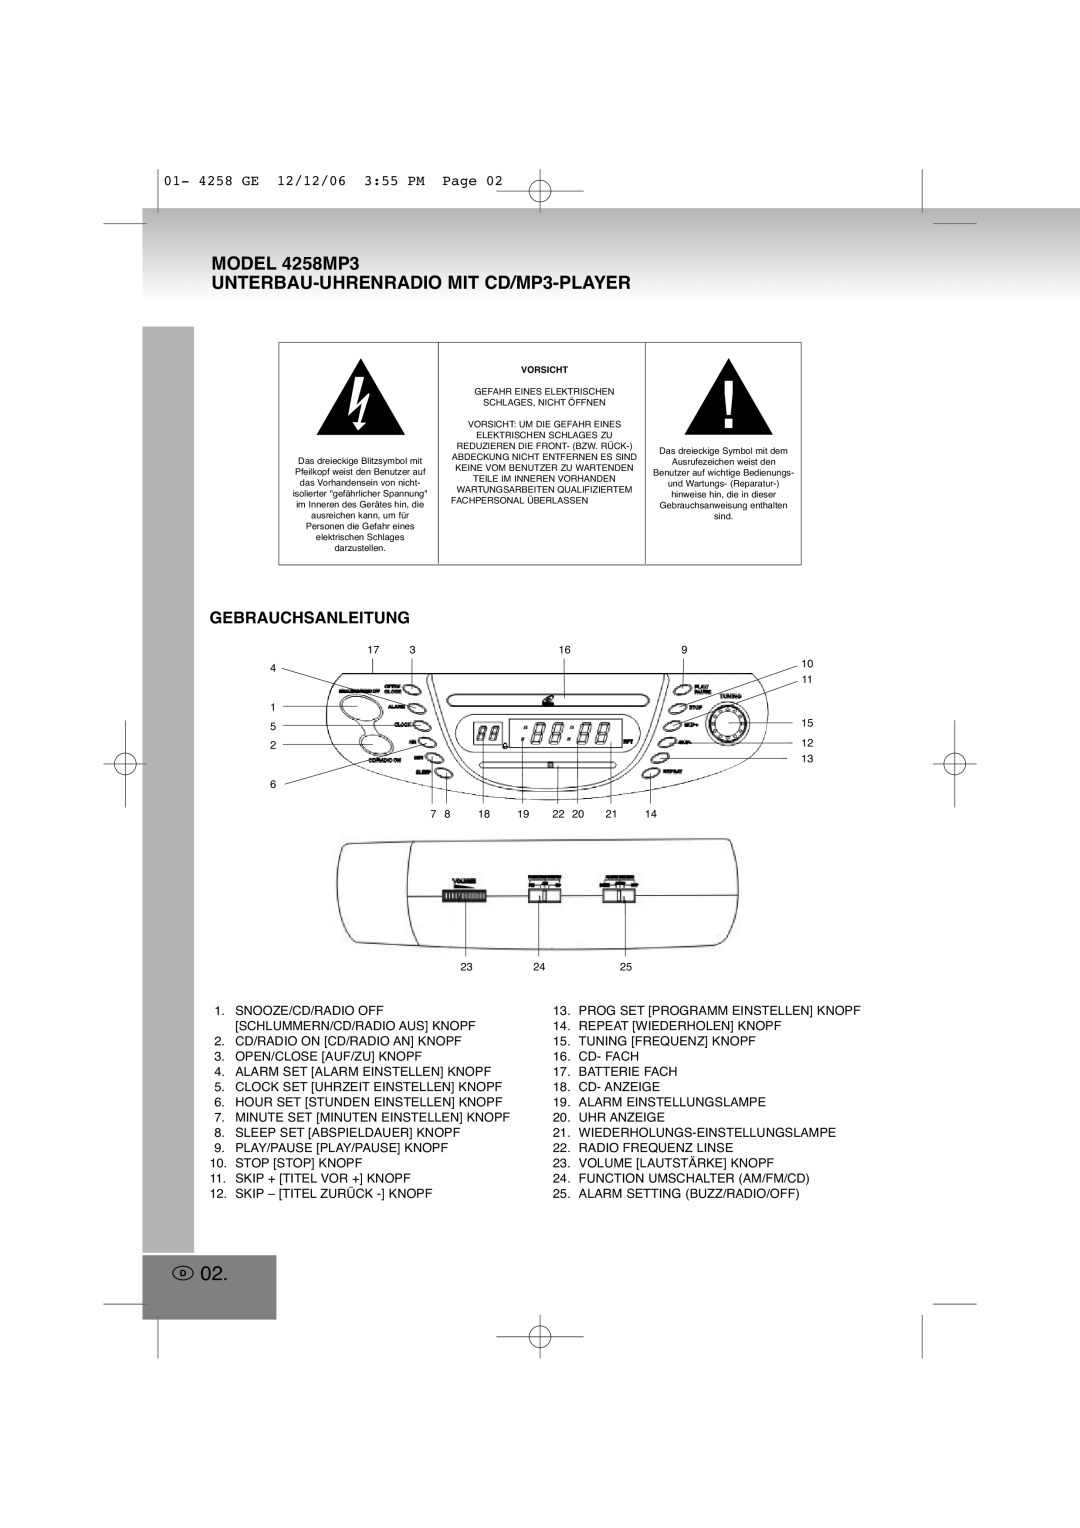 Elta manual Model 4258MP3 UNTERBAU-UHRENRADIO MIT CD/MP3-PLAYER, Gebrauchsanleitung 